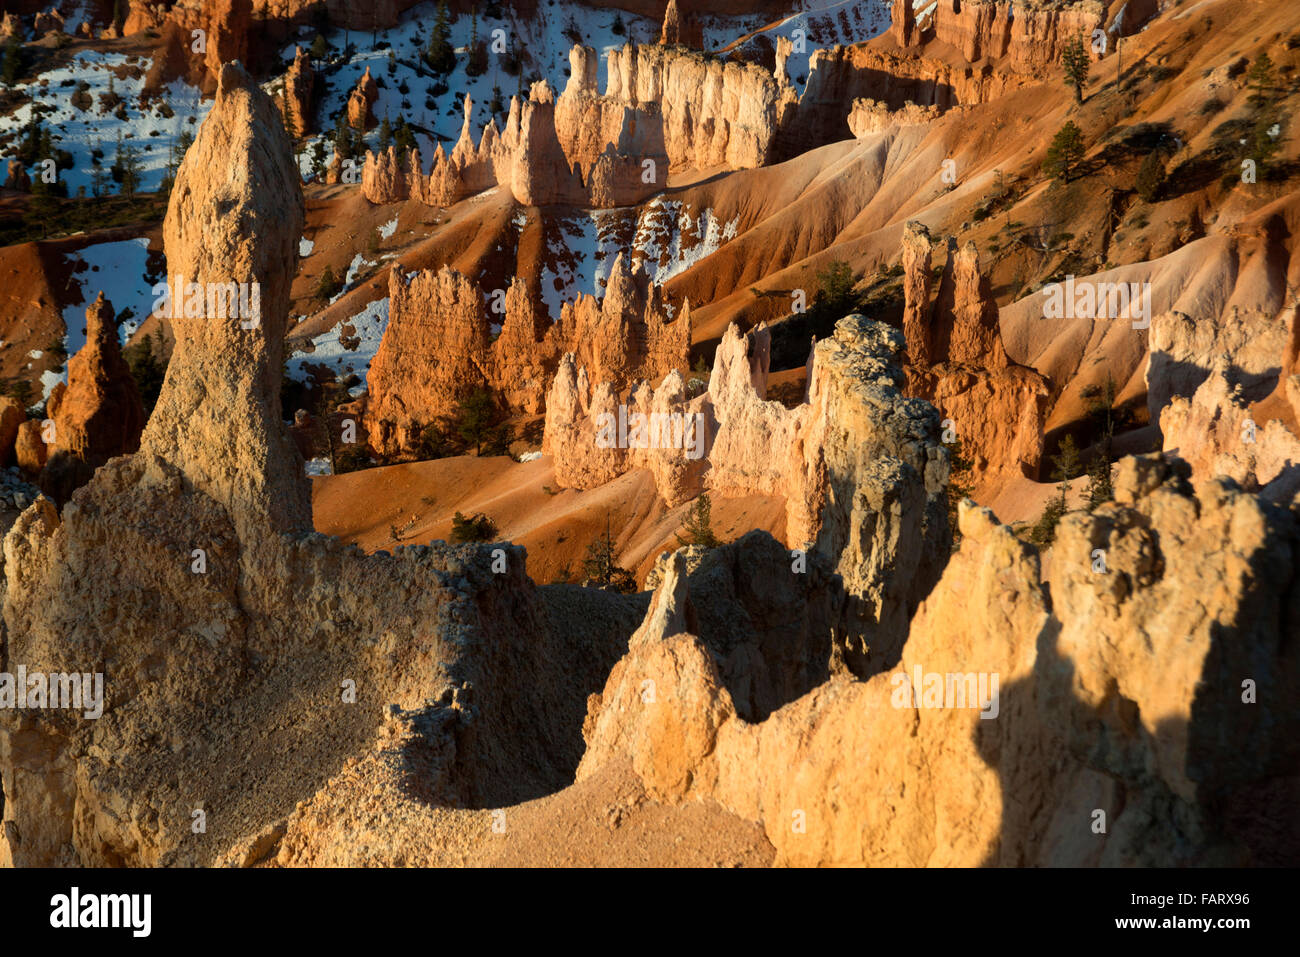 Bryce-Canyon-Nationalpark, Utah, USA. Kalkstein roten Sandsteinfelsen Zinnen, erodiert und über Jahrhunderte überstanden. Stockfoto